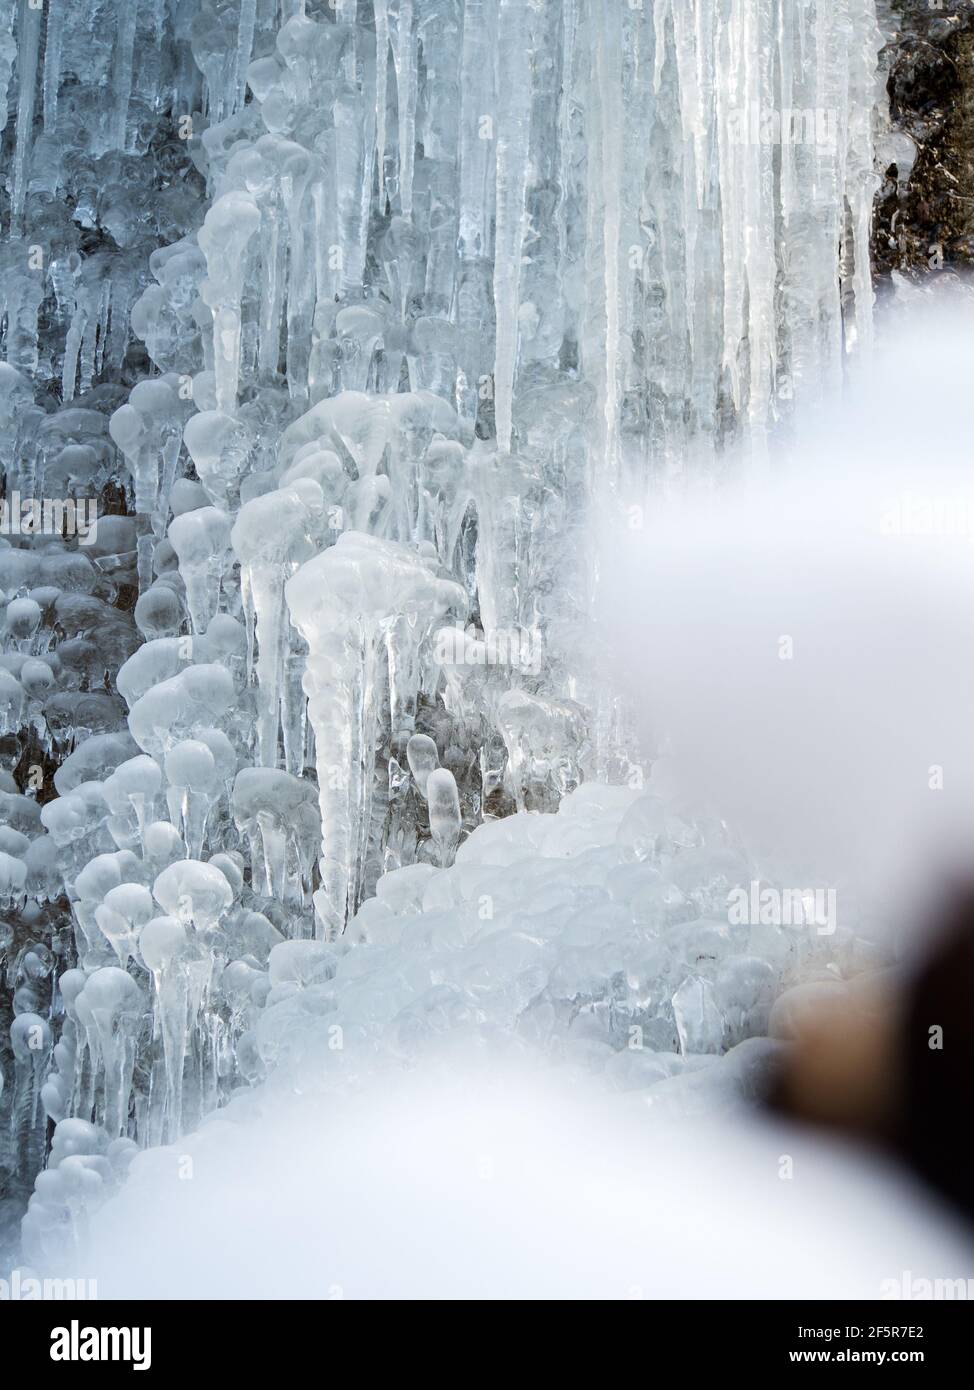 Gefrorener Wasserfall mit Schnee im Winter, gefrorener Wasserfall mit Schnee im Winter Stockfoto